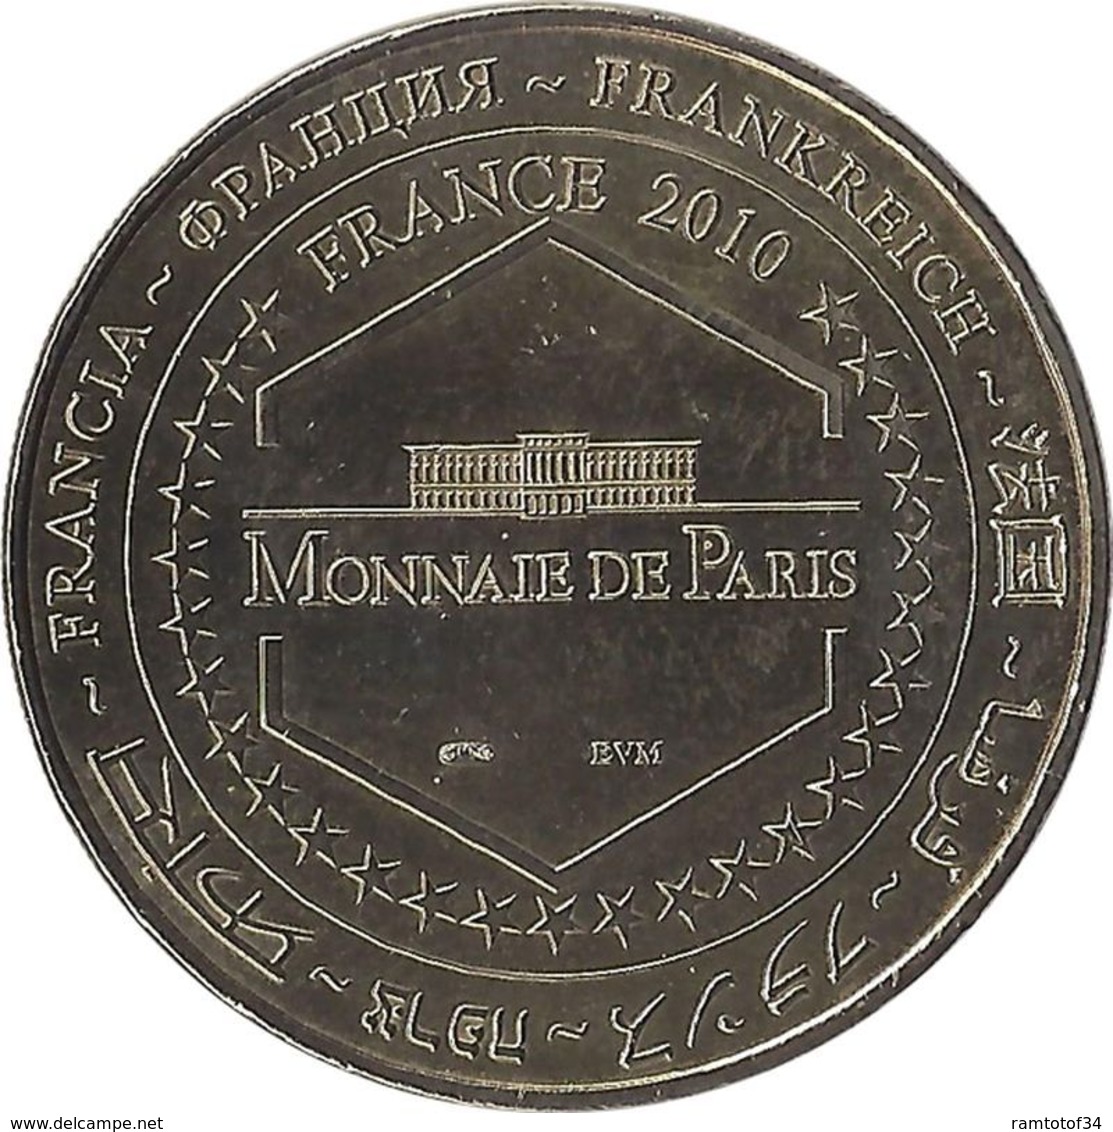 2010 MDP205 - MARSEILLE - Grande Loge Nationale Française / MONNAIE DE PARIS - 2010